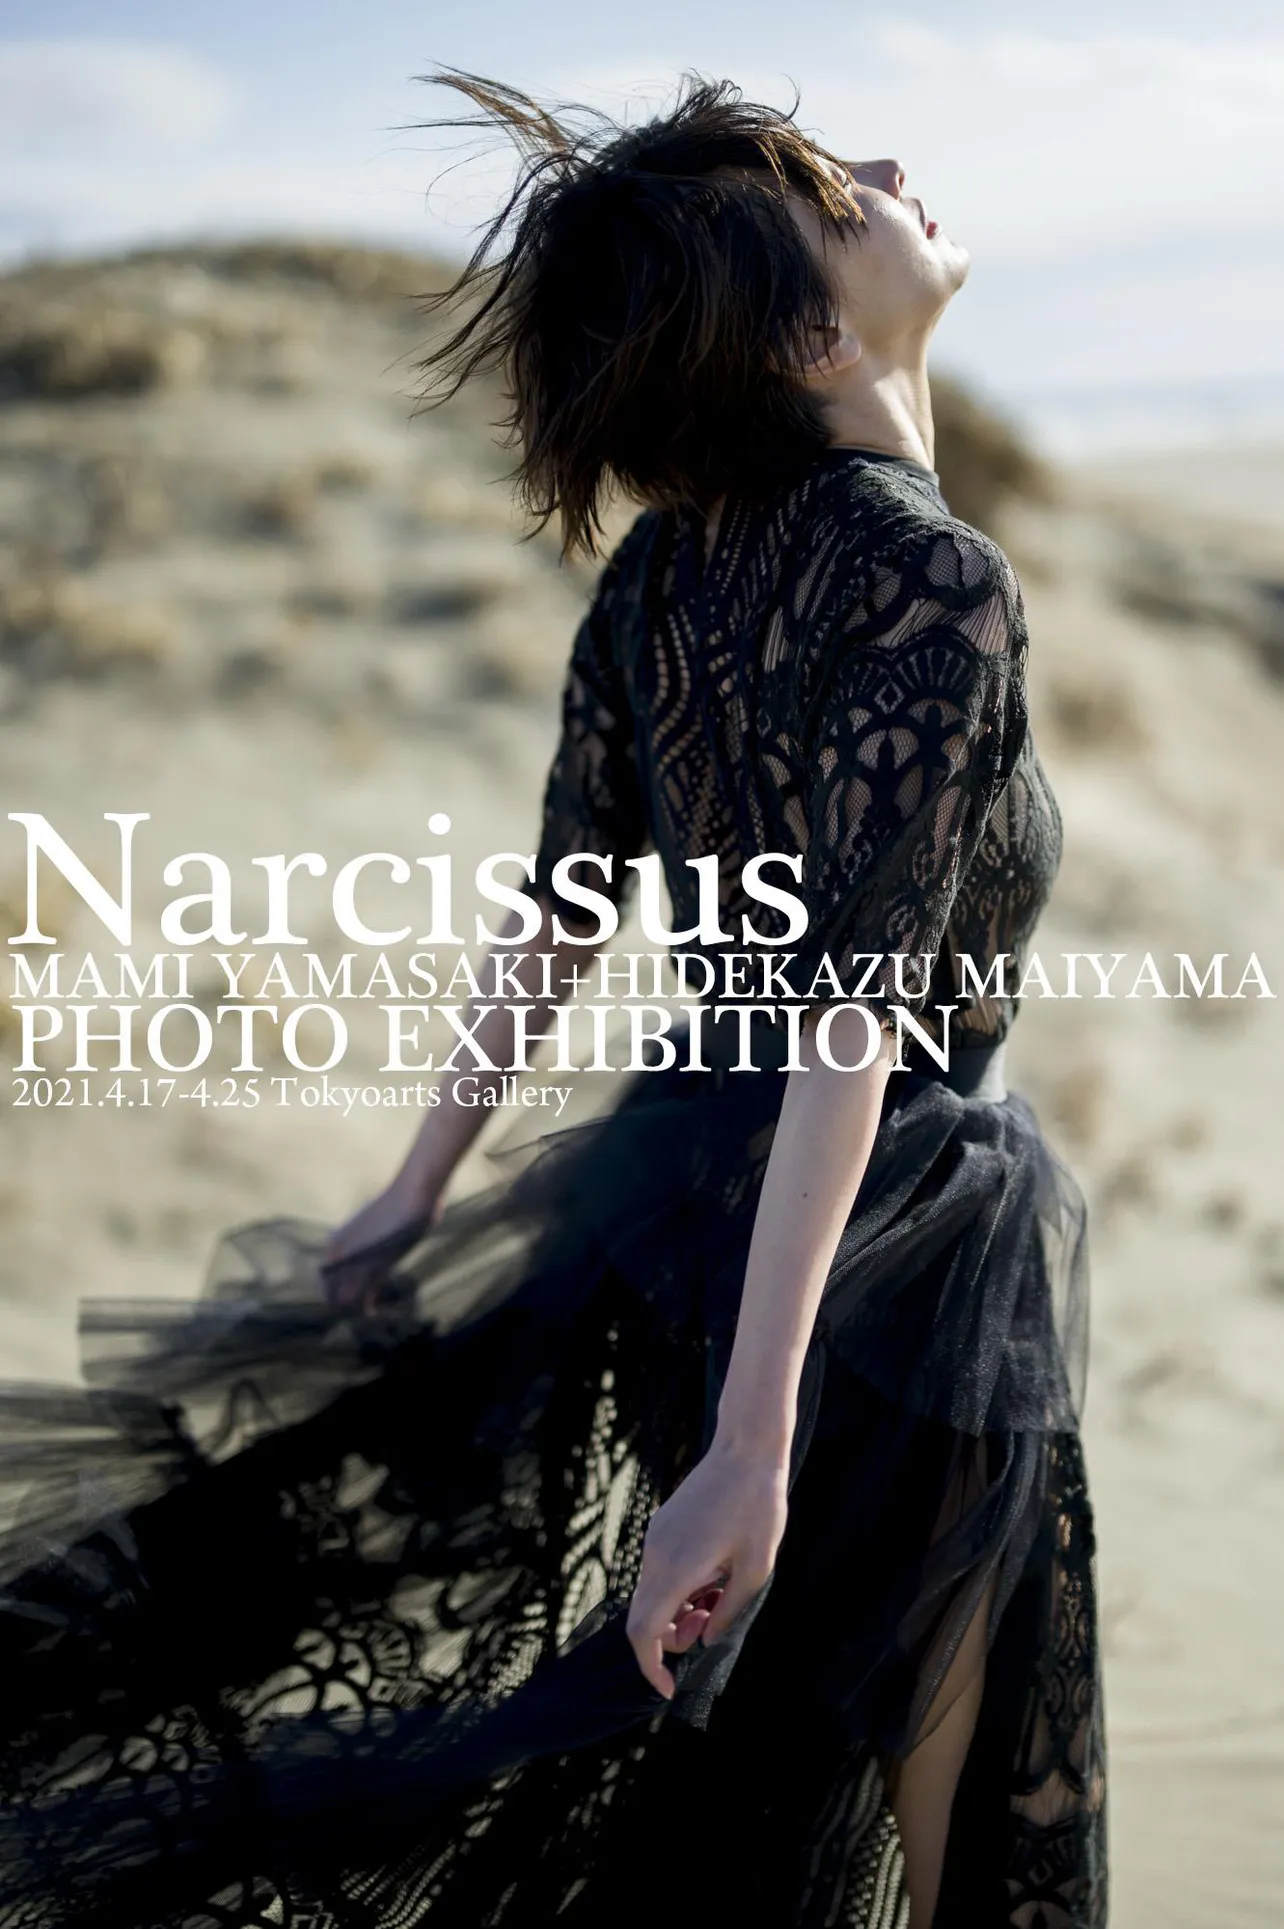 山崎真実が舞⼭秀⼀と再びタッグを組んだ写真展「Narcissus(ナルシス)」が開催される